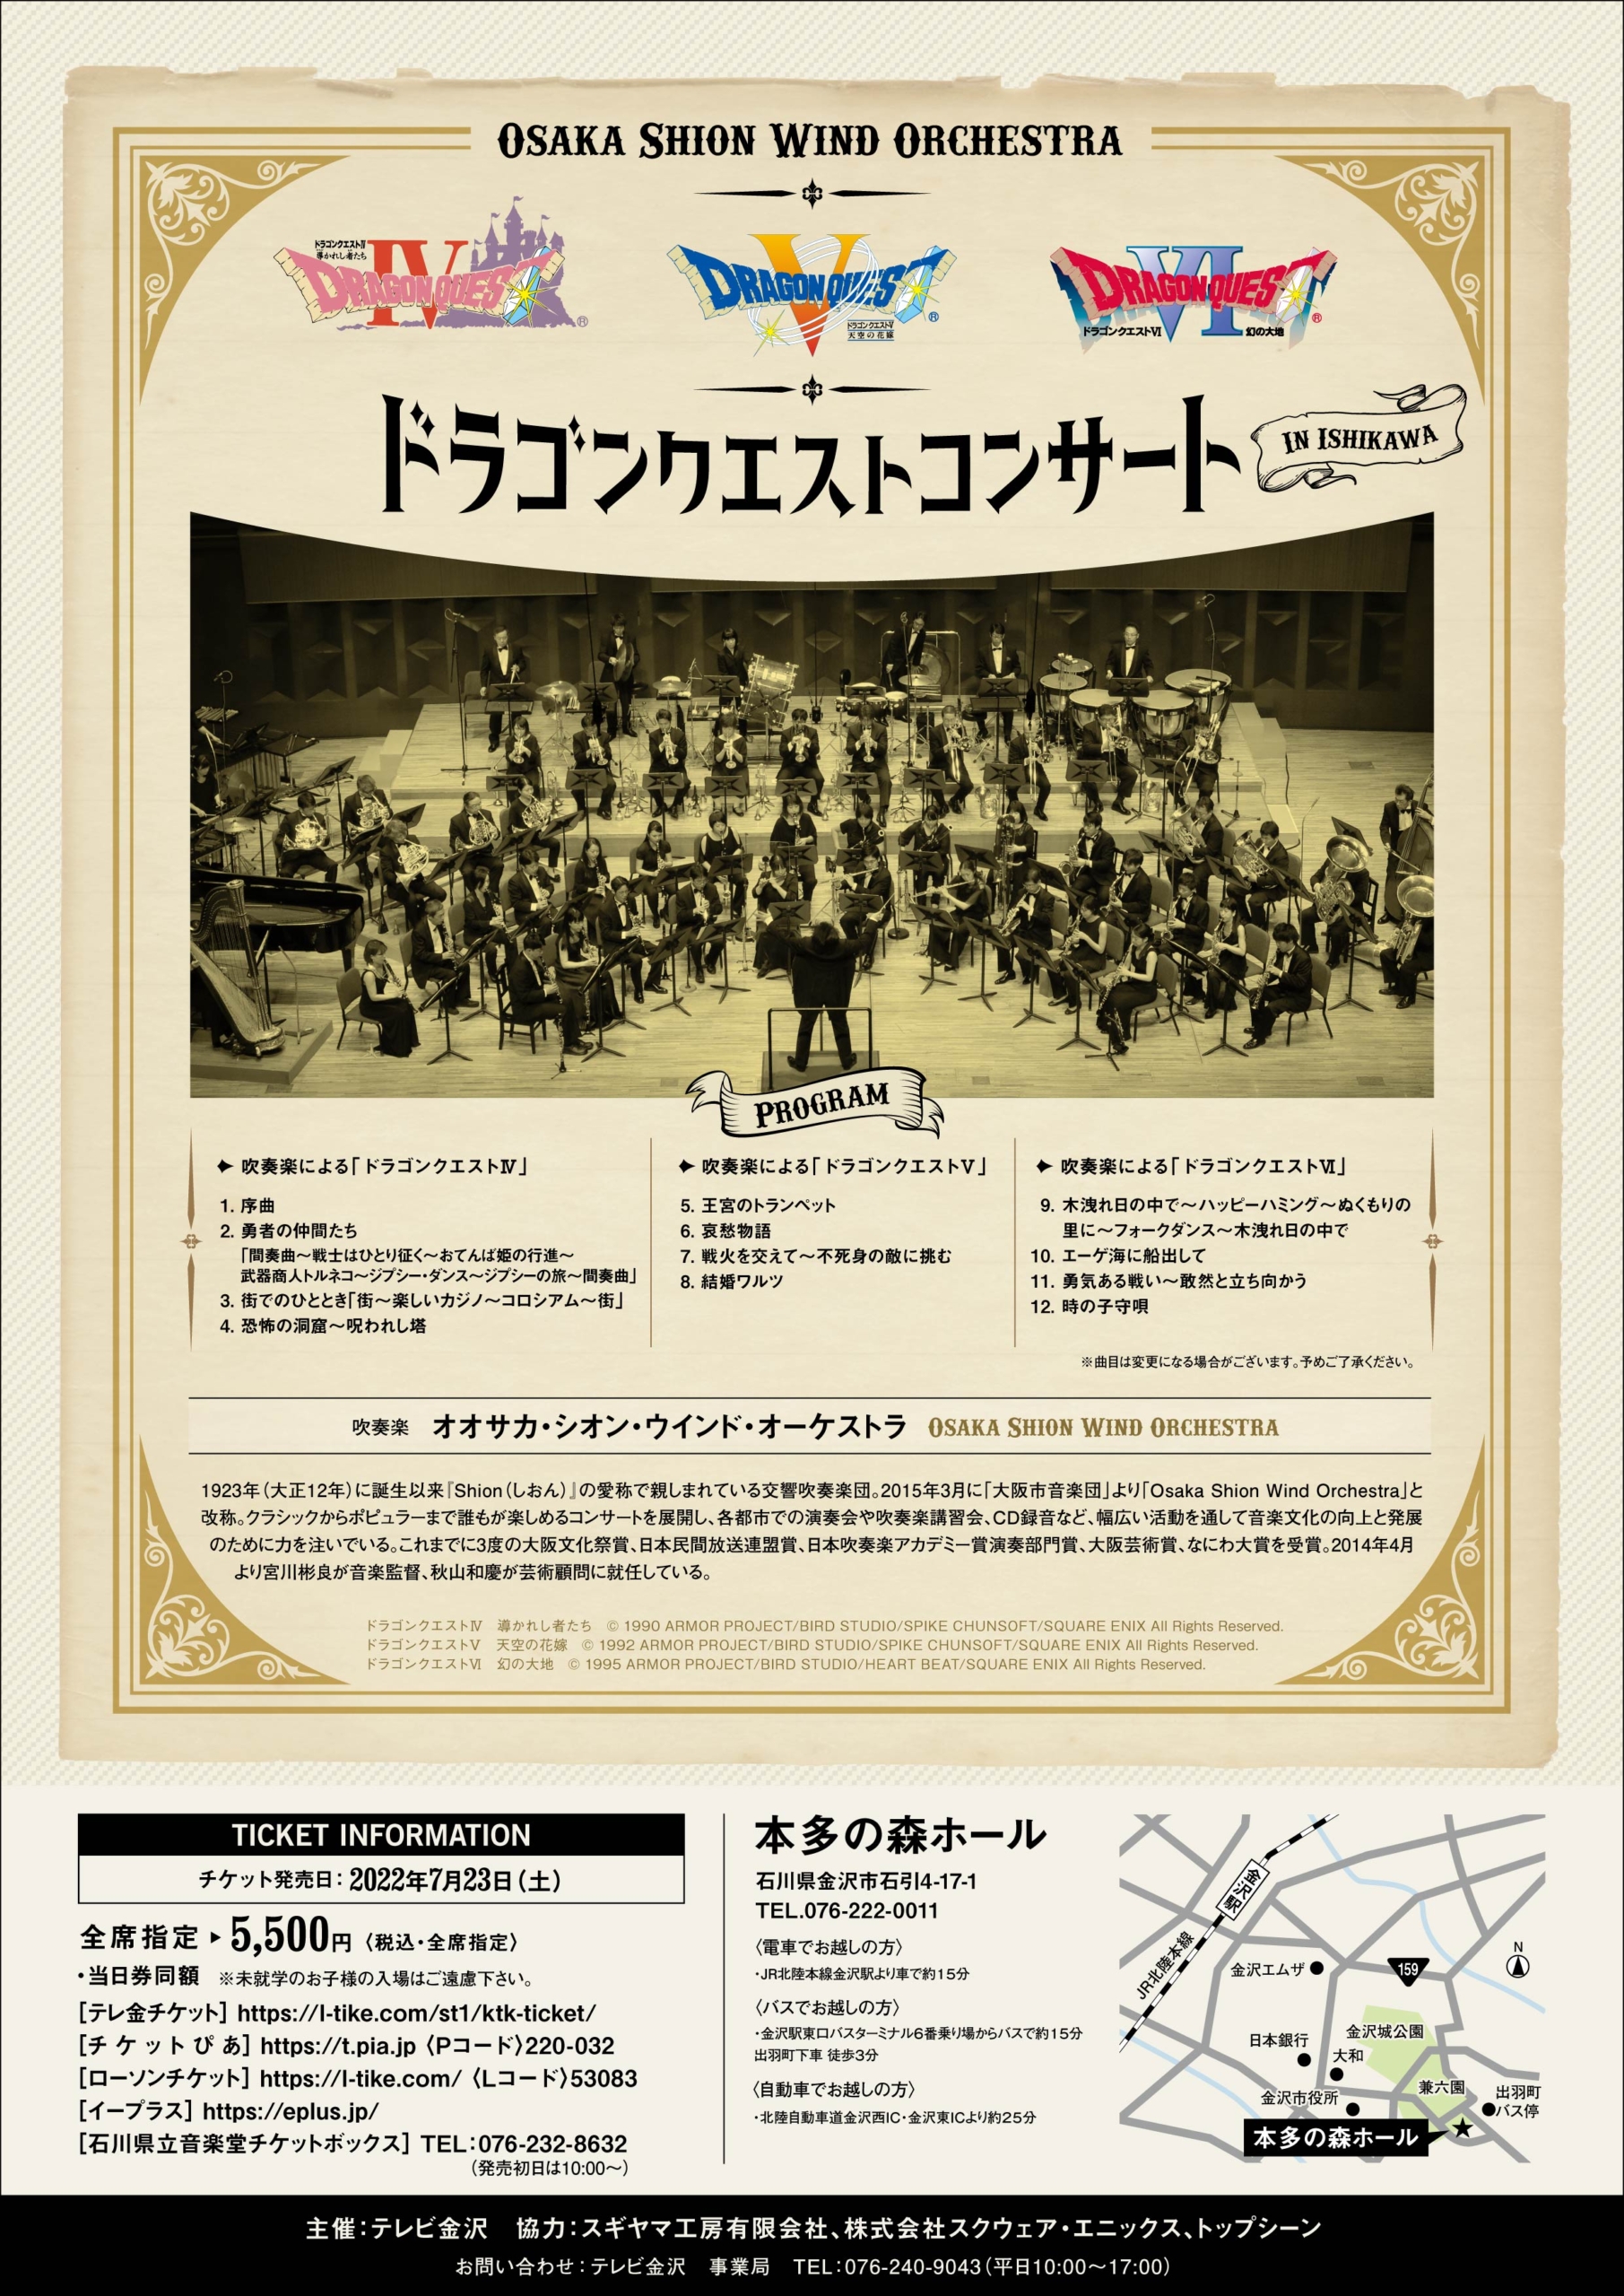 ドラゴンクエストコンサート In 石川 コンサート情報 Osaka Shion Wind Orchestra 大阪市音楽団